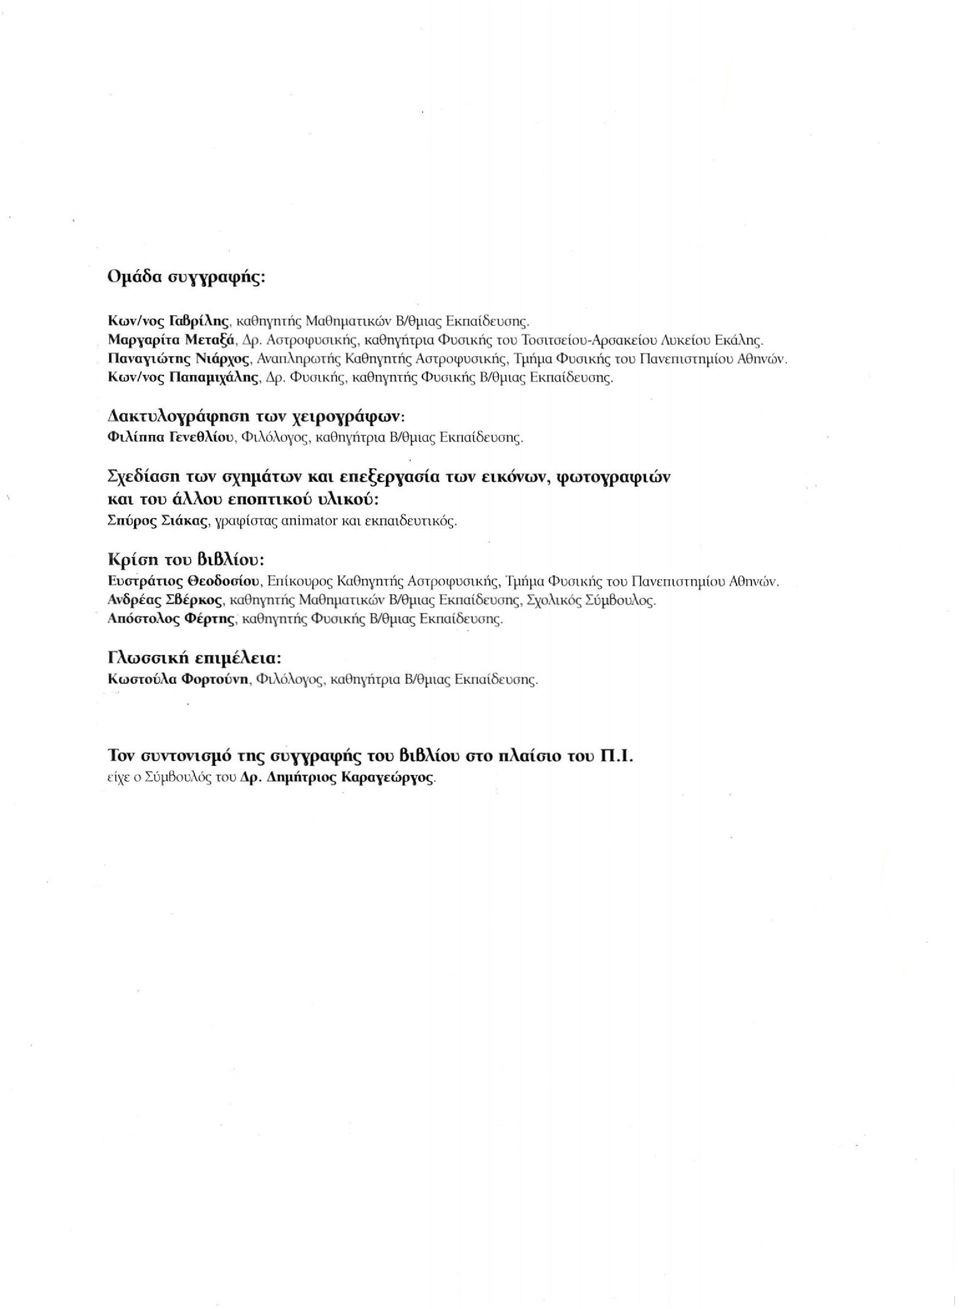 Δακτυλογράφηση των χειρογράφων: Φιλίππα Γενεθλίου, Φιλόλογος, καθηγήτρια Β/θμιας Εκπαίδευσης.